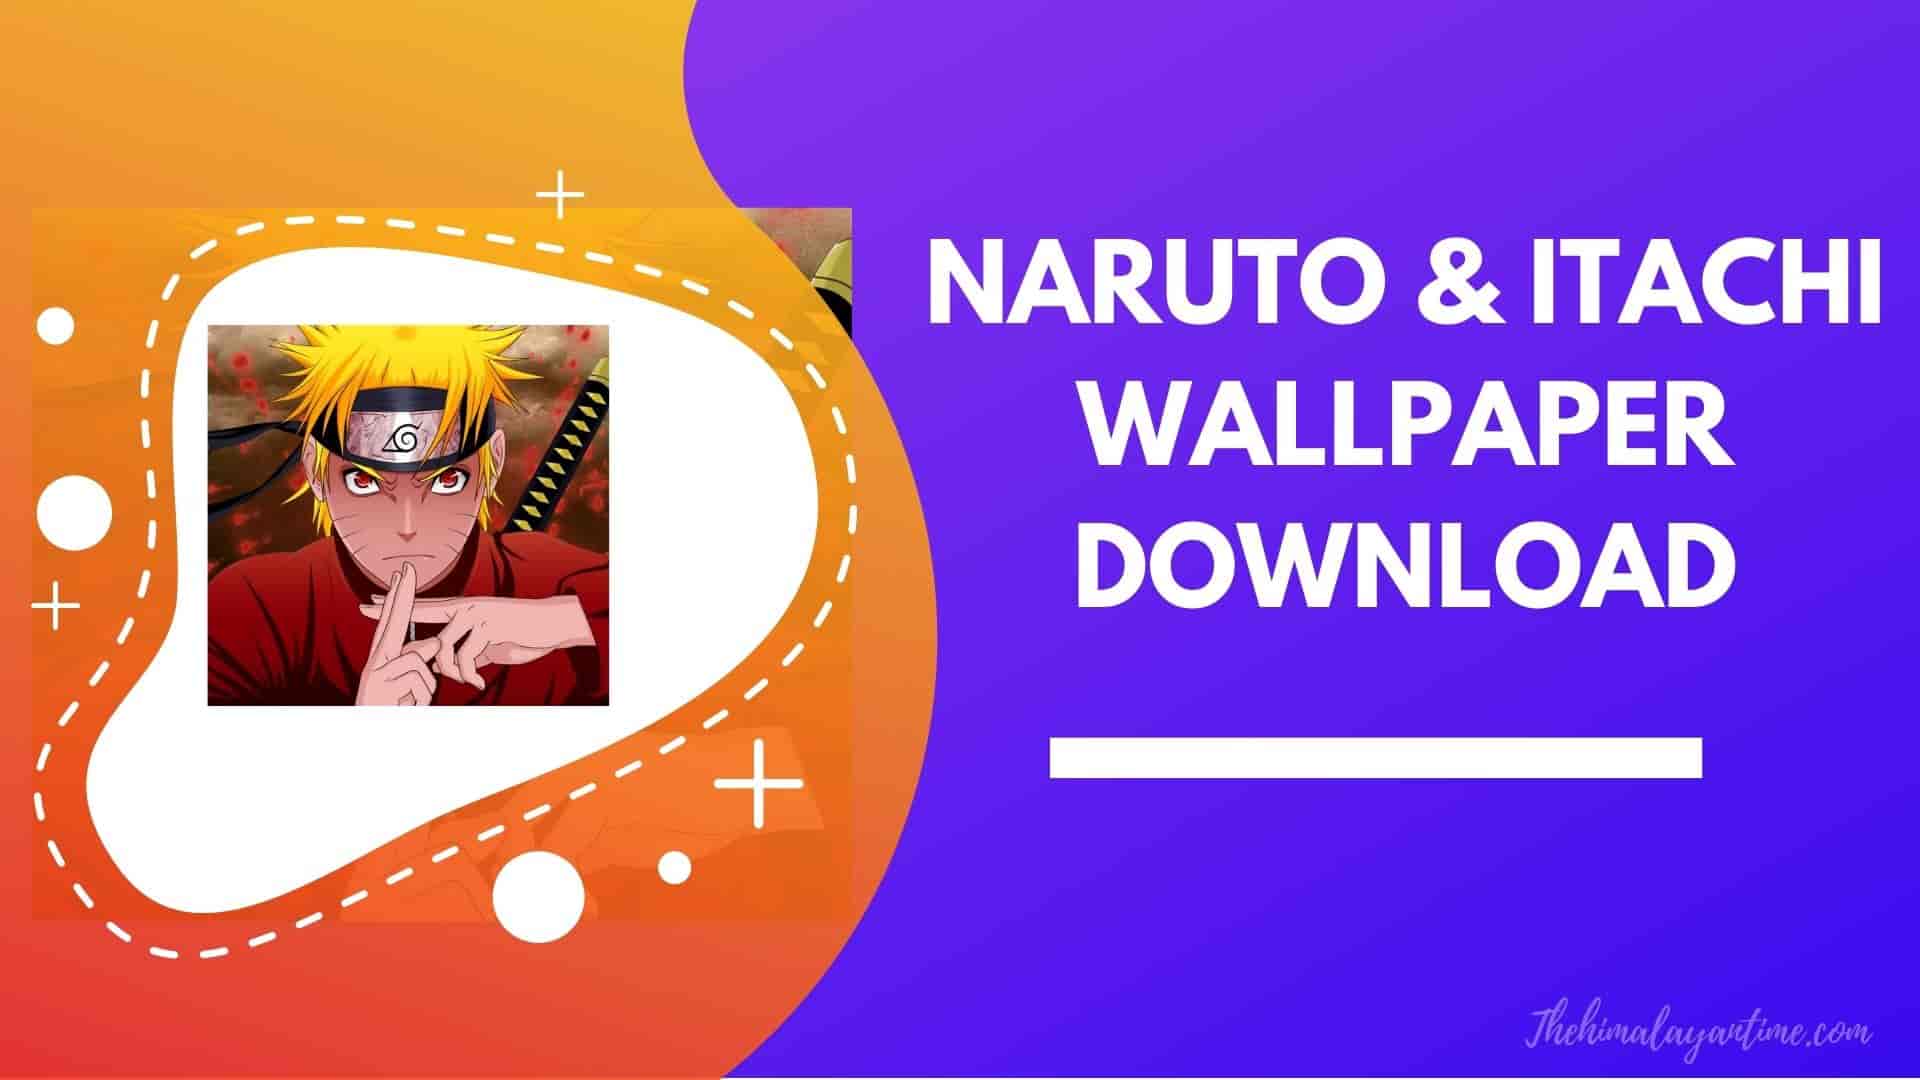 Naruto wallpaper download